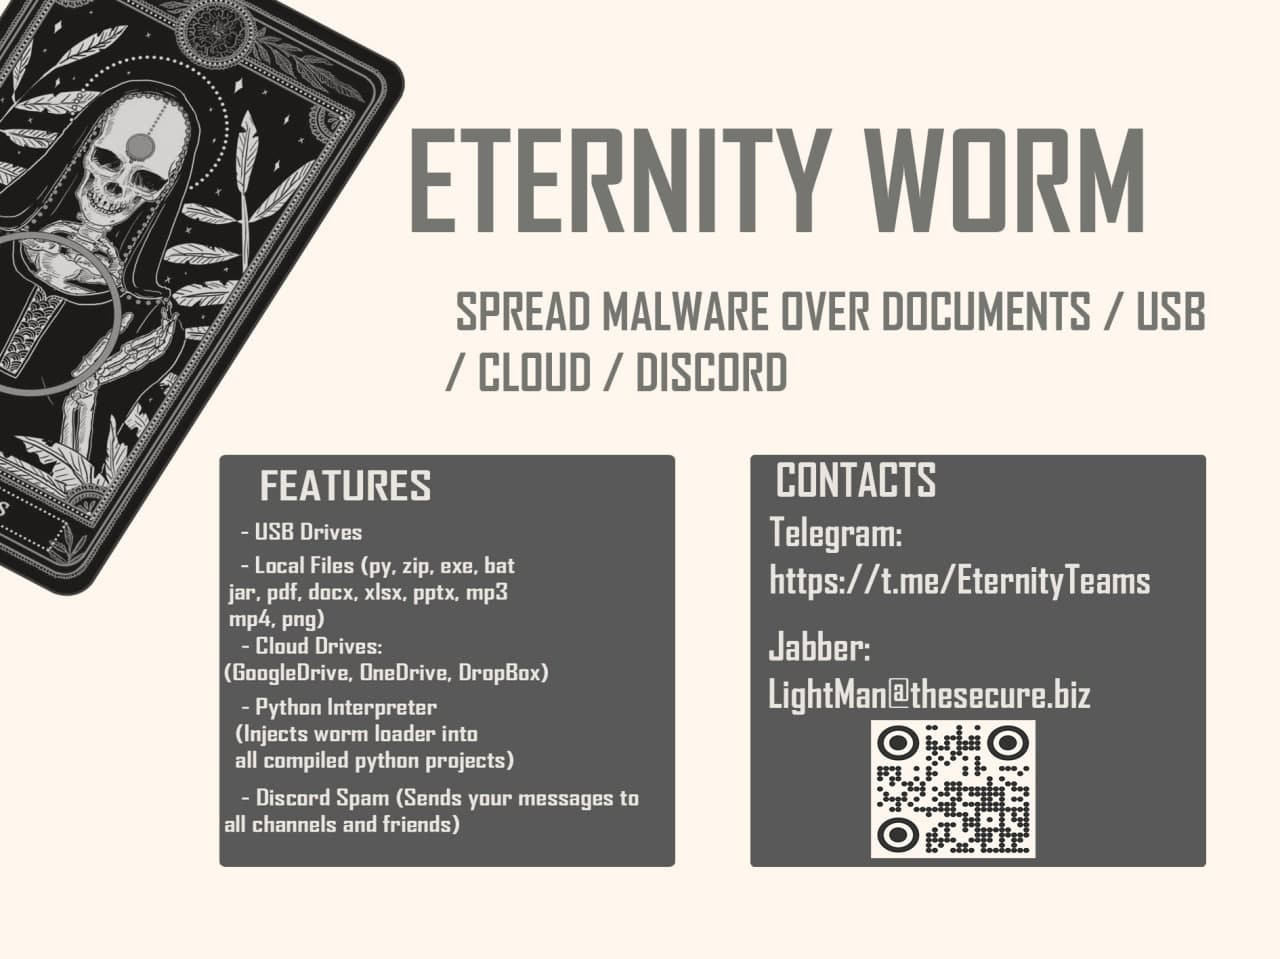 Publicité Eternity Worm publiée sur plusieurs forums clandestins.